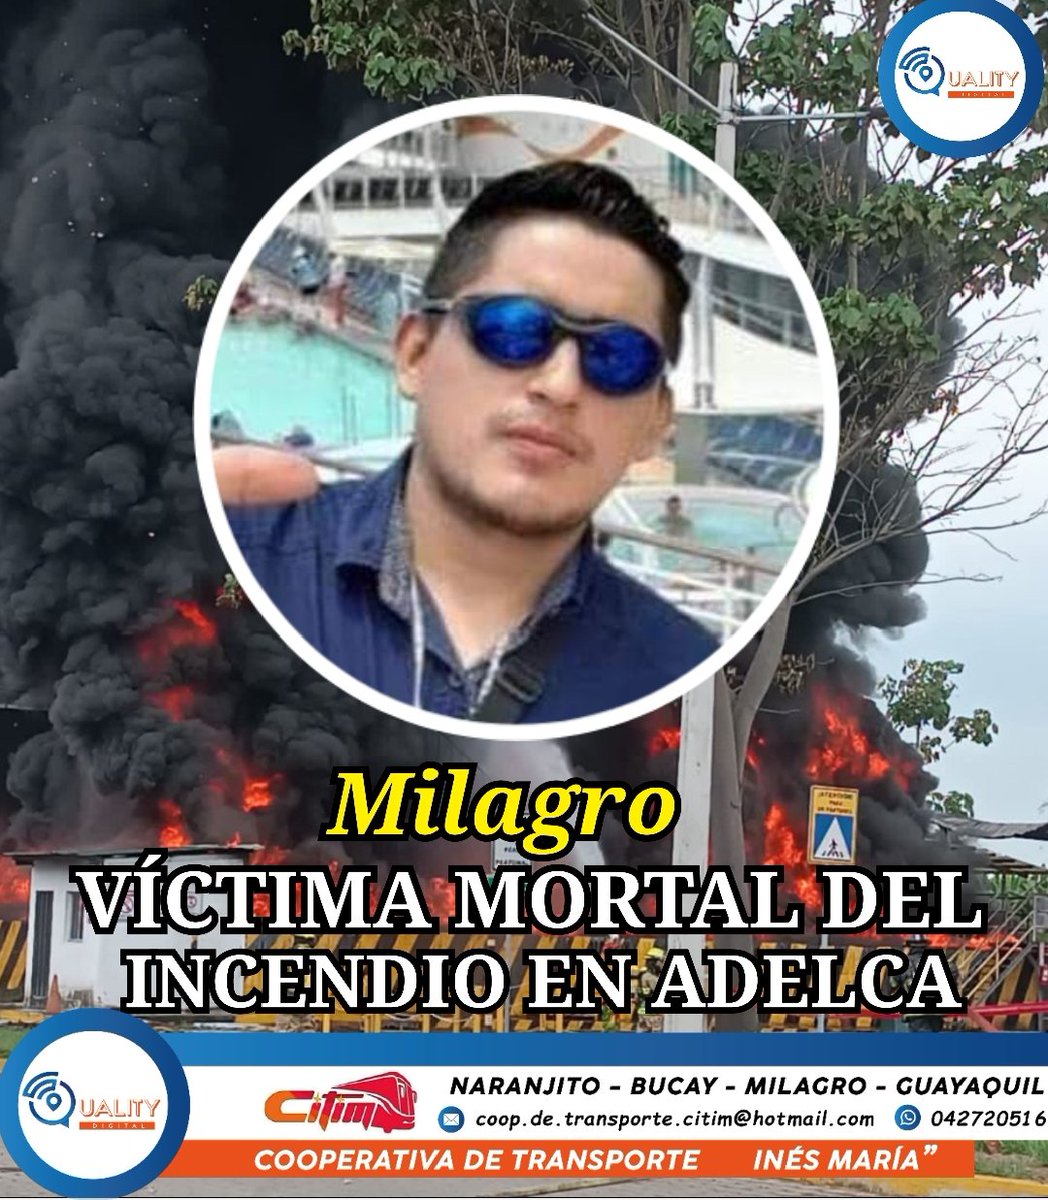 #QualityDigital #Milagro 
🔴 INCENDIO EN LA ACERÍA ADELCA DEJA UN MU3RTO

Falleció Fausto Gutama, uno de los trabajadores afectados de ADELCA en el incendio.

El incidente ocurrió en la mañana del sábado 30 de diciembre del 2023 en la empresa de Acería Adelca en Milagro - Guayas.